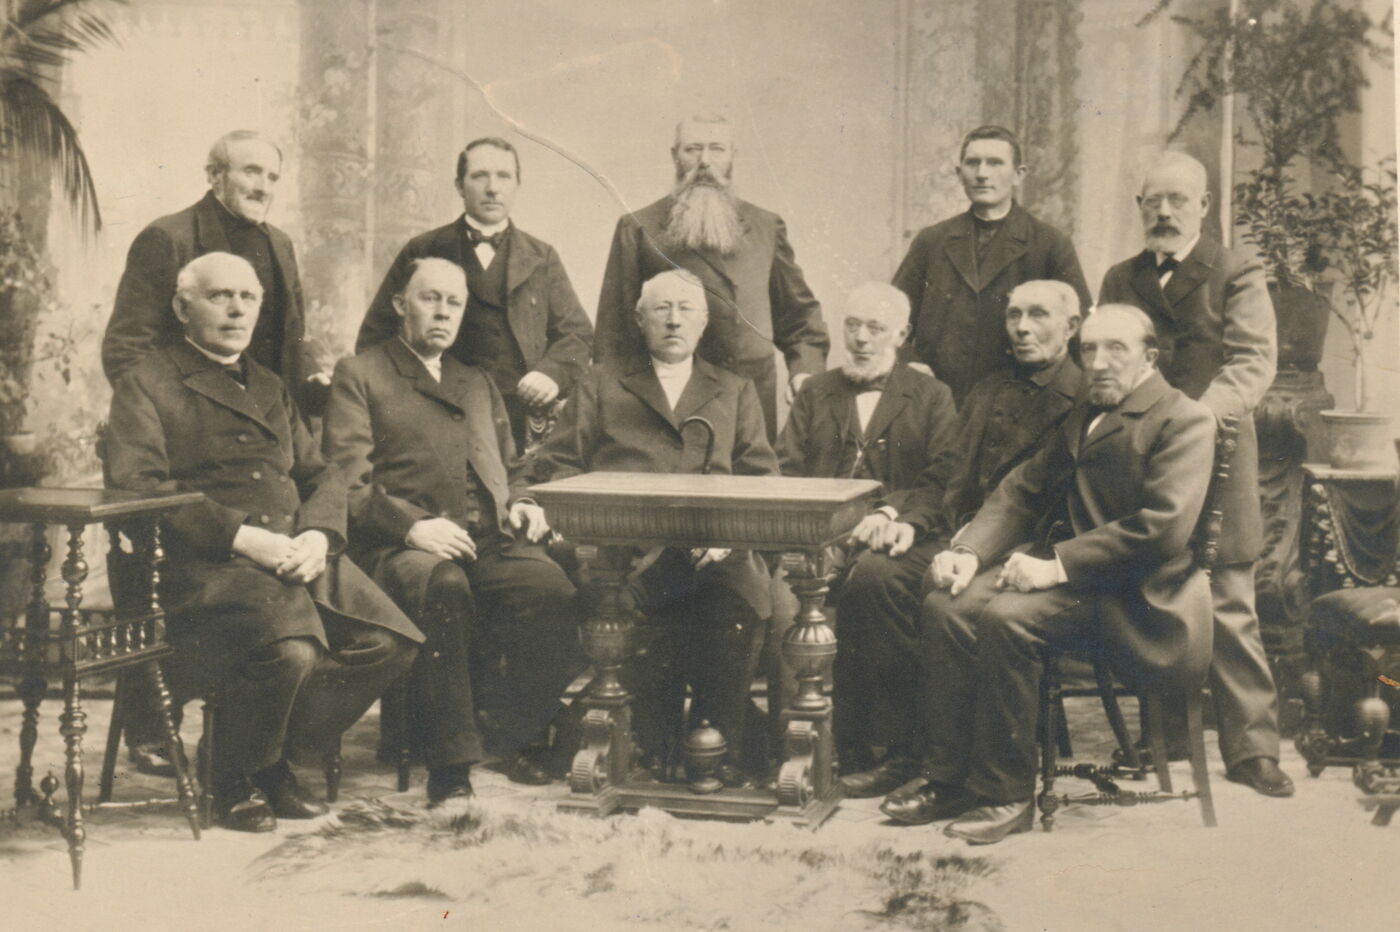 Das Bild zeigt eine historische Aufnahme von zehn männlich lesbaren Personen, die sich in zwei Reihen hinter einem Tisch postiert haben für das Foto; sie tragen dunkle Anzüge.